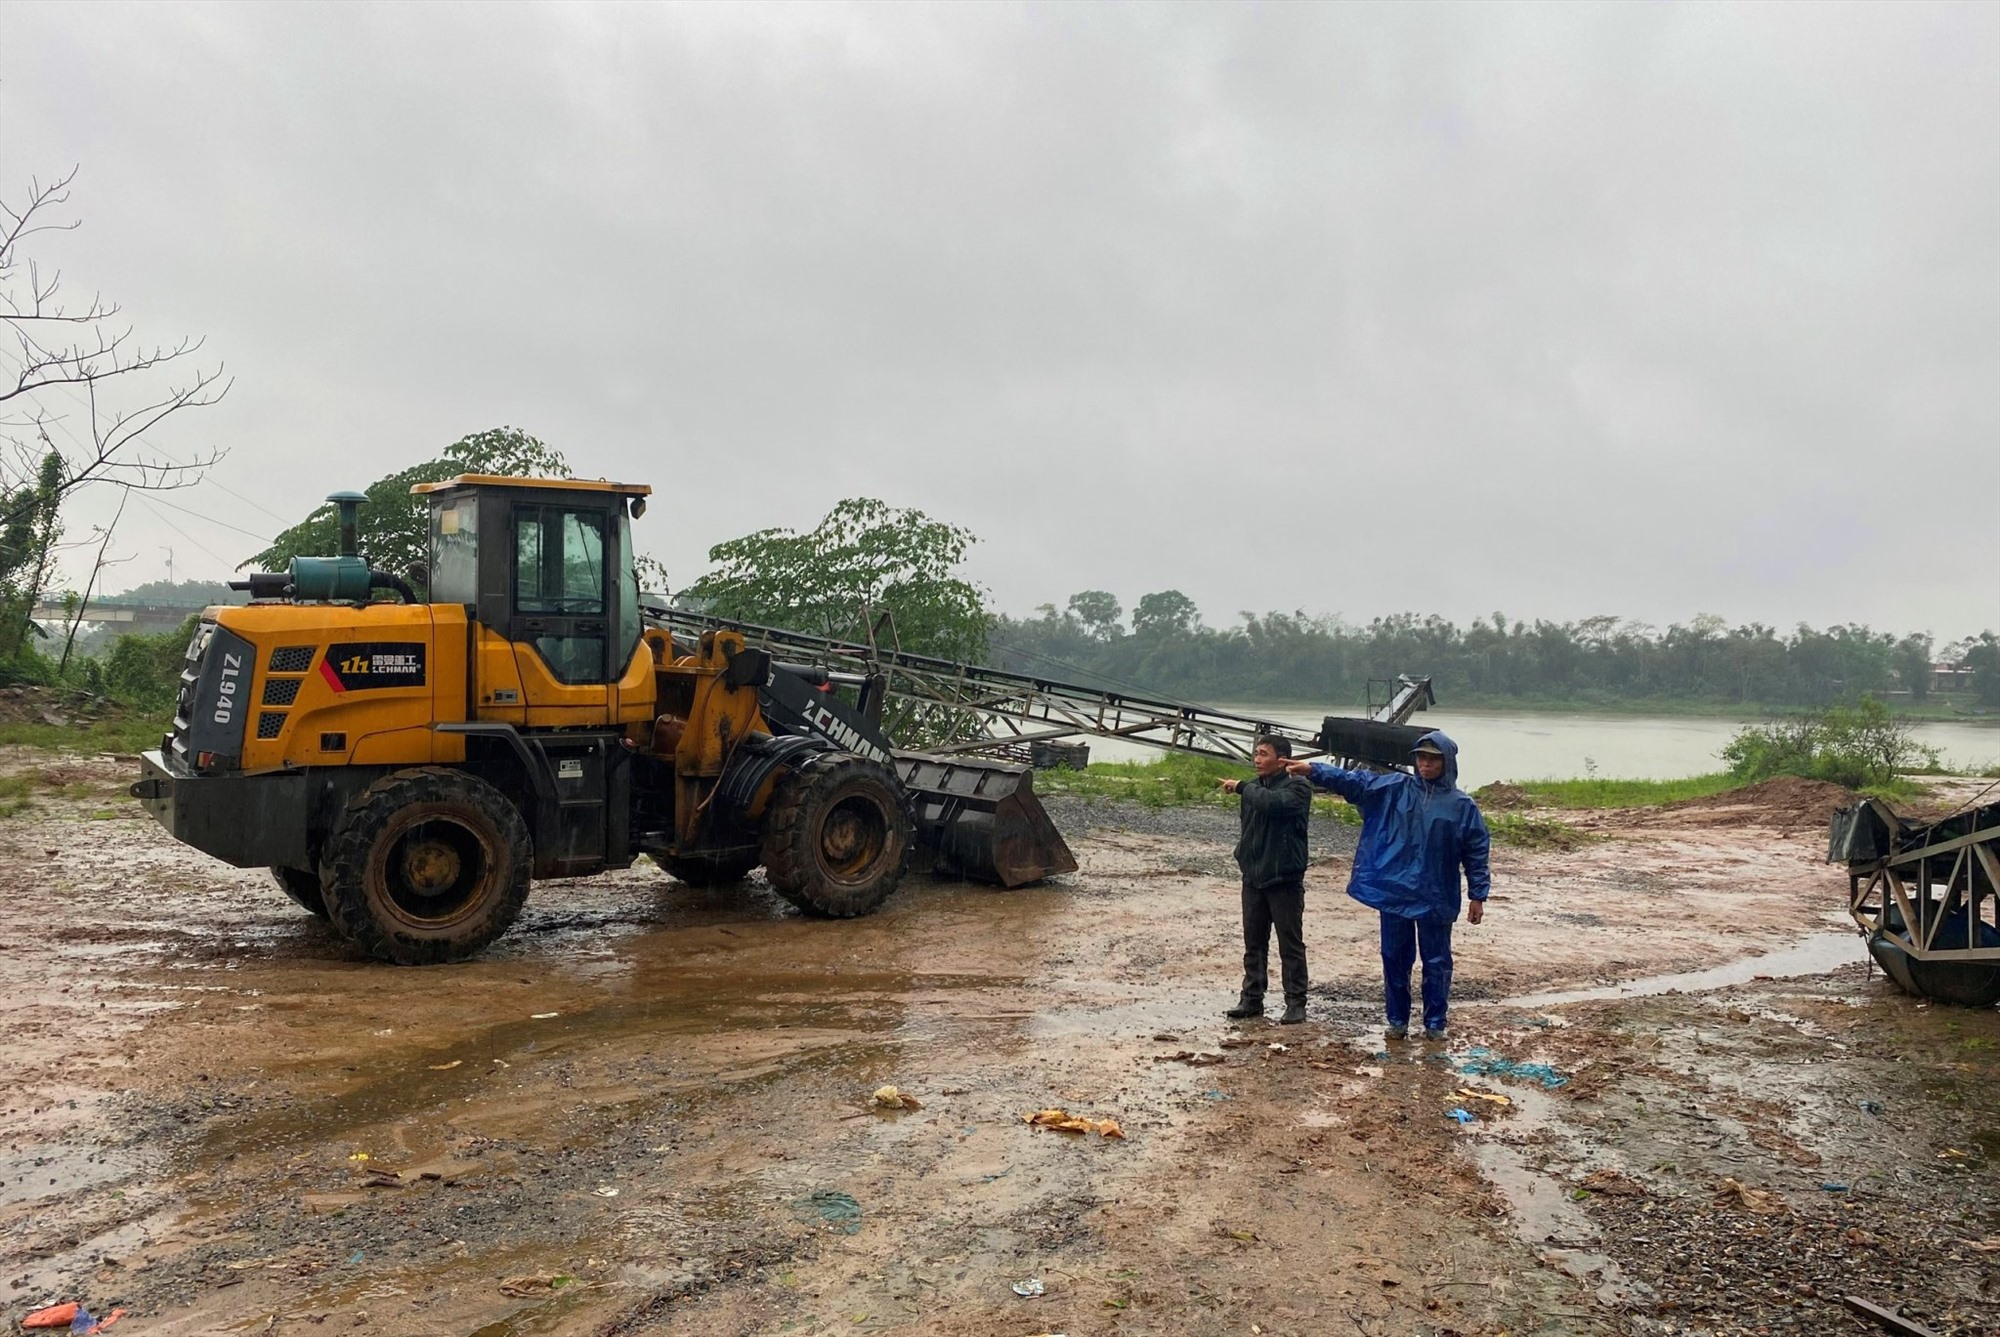 Các hộ kinh doanh cát sỏi ở thôn Tân Đức xót xa khi nhiều thiết bị, máy móc tại bãi tập kết phải nằm giữa nắng mưa hơn 6 tháng qua và đã có dấu hiệu xuống cấp, hư hỏng - Ảnh: N.B